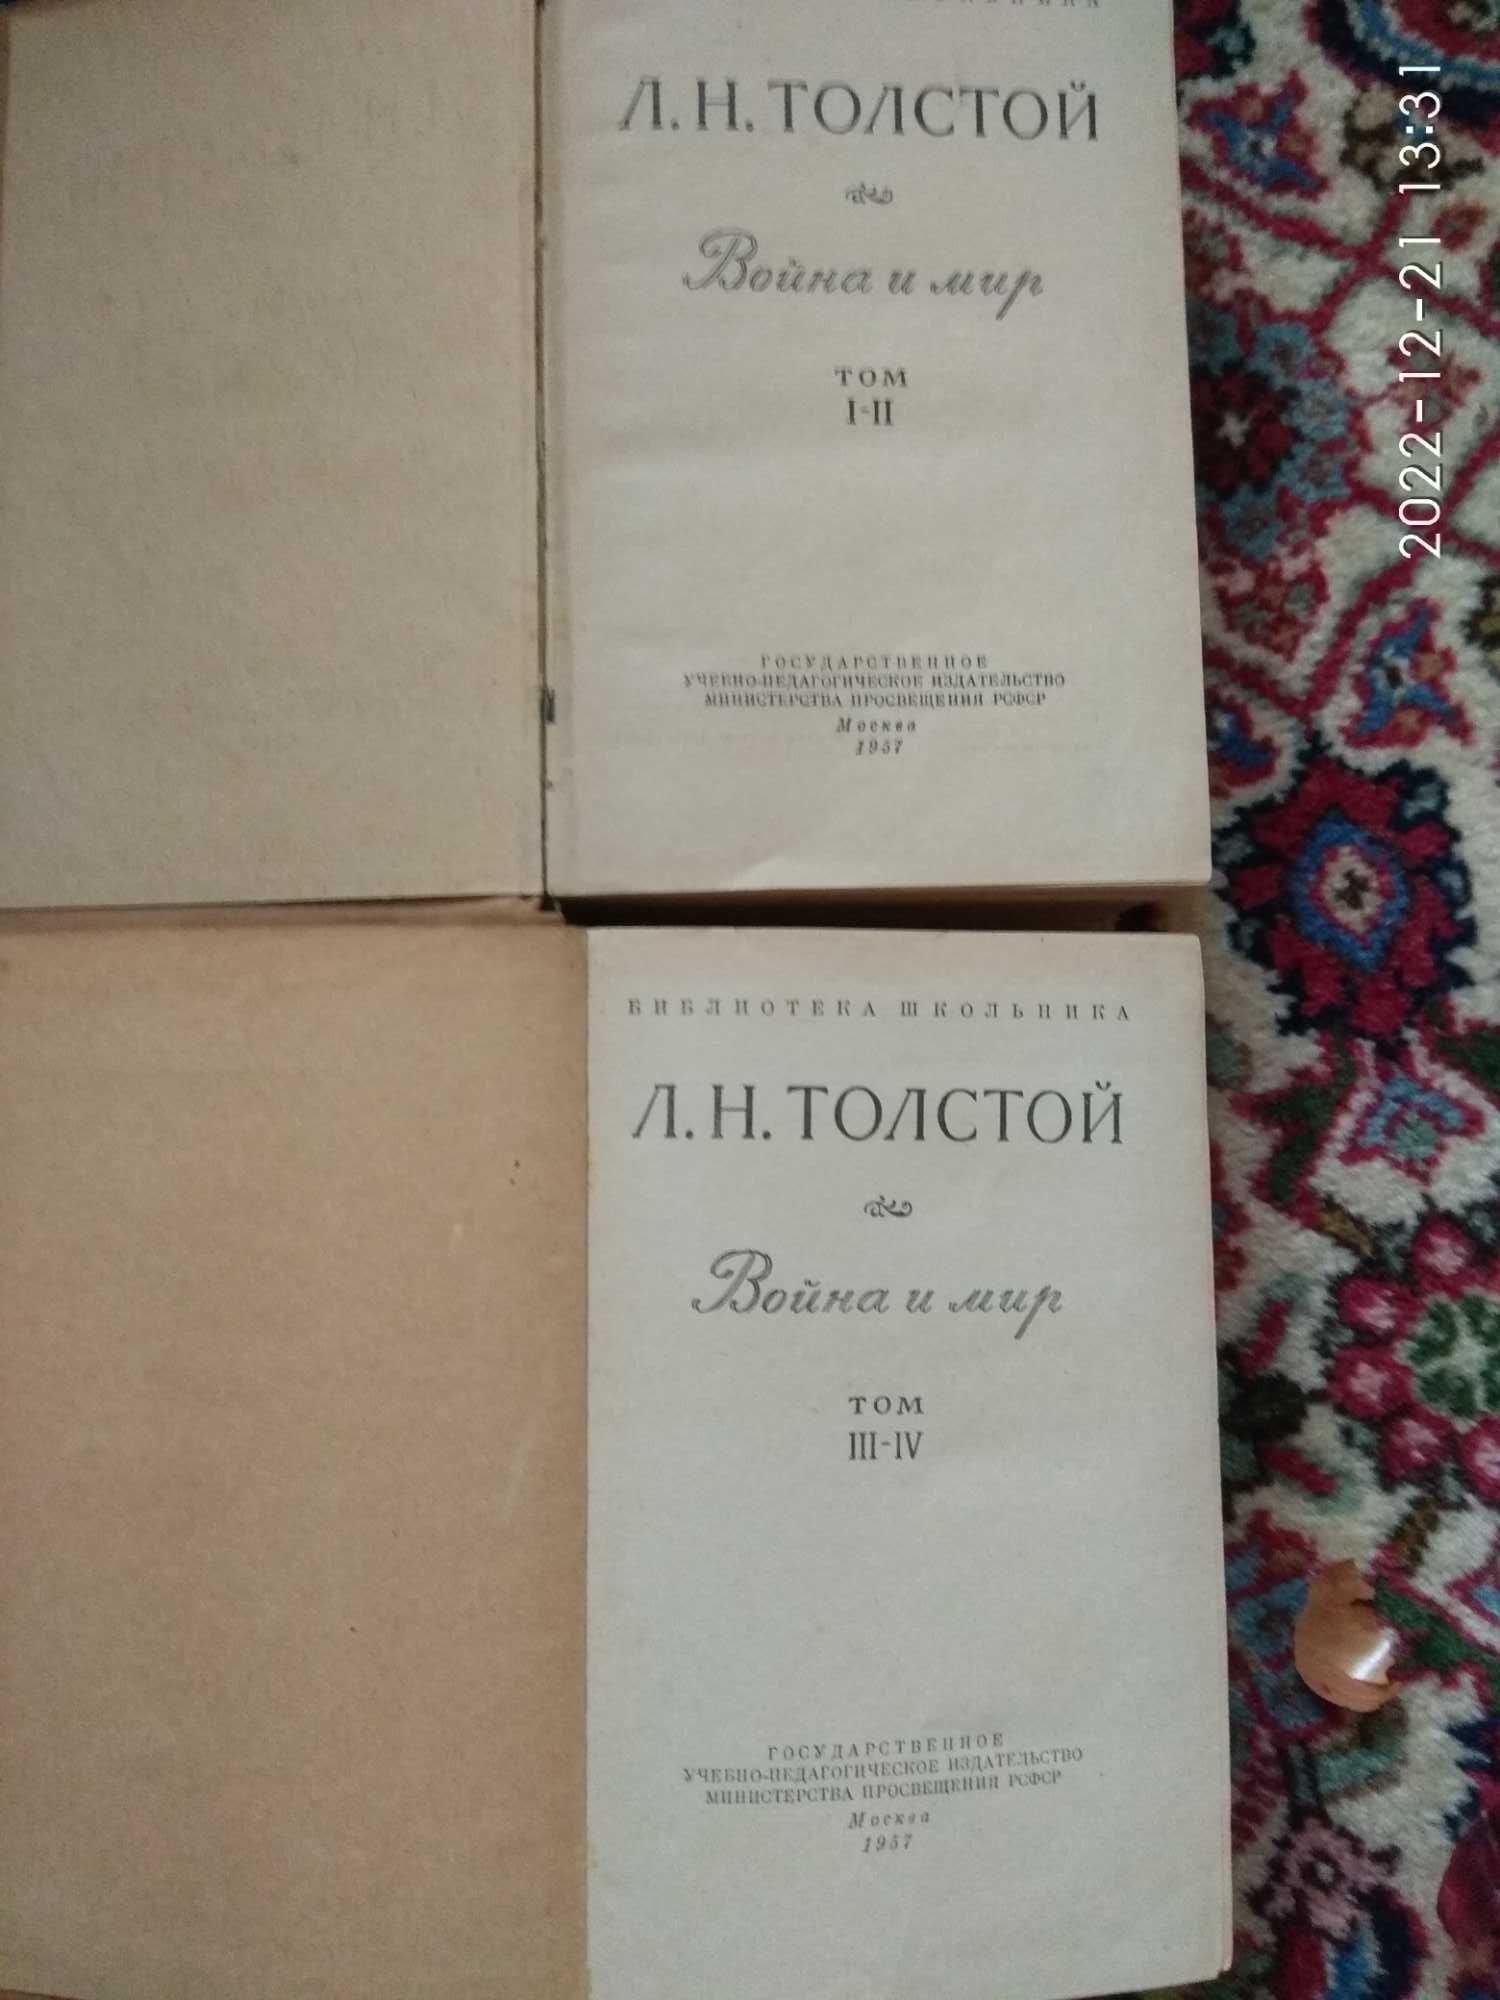 Продам книги издания СССР.